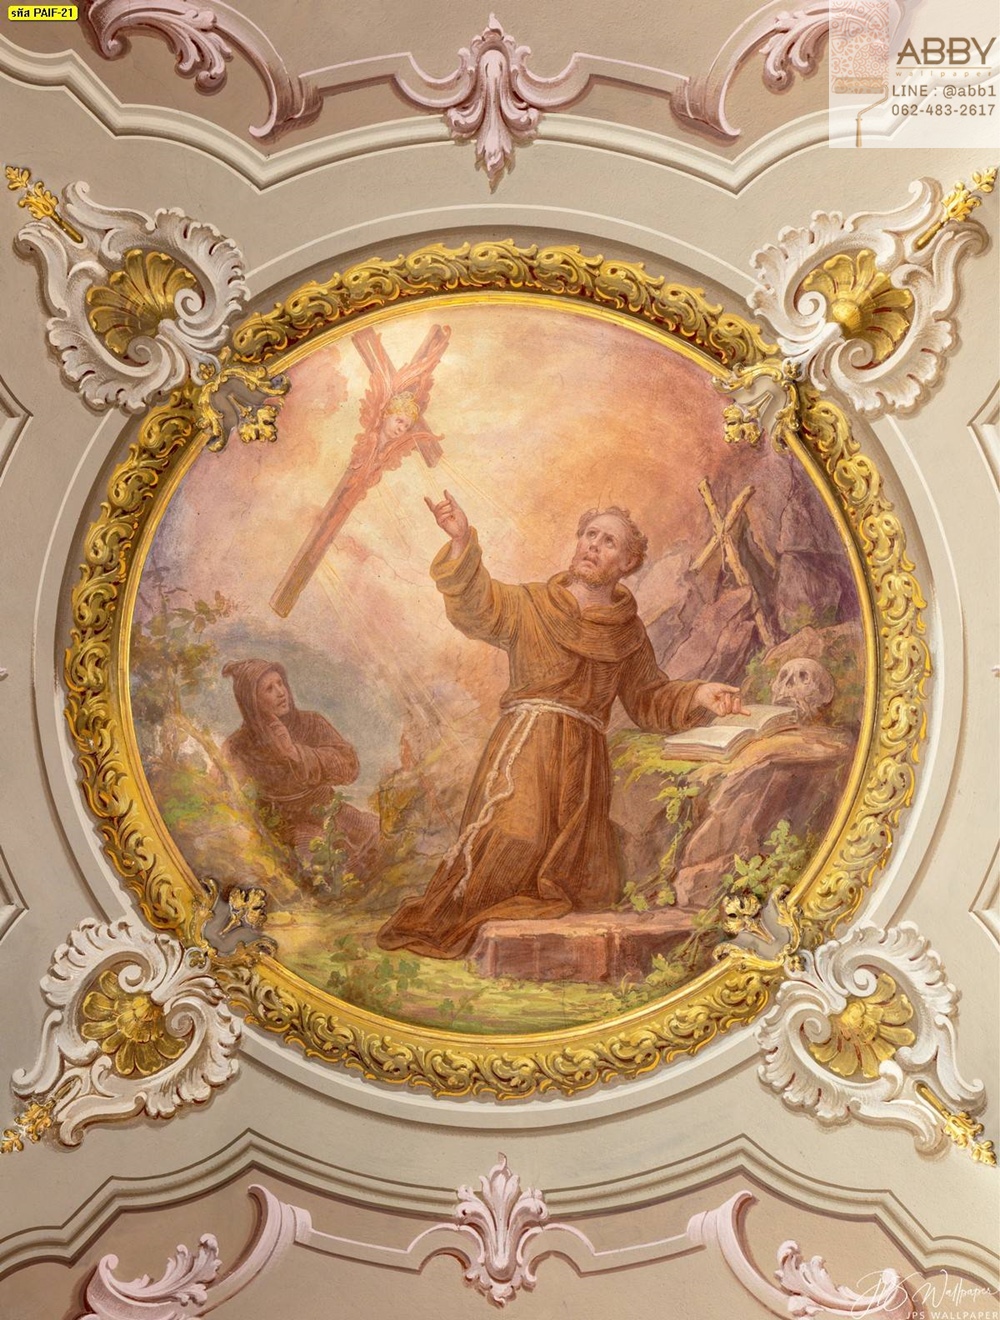 ภาพวาดการตีตราของเซนต์ฟรานซิสแห่งอัสซีซีในโบสถ์